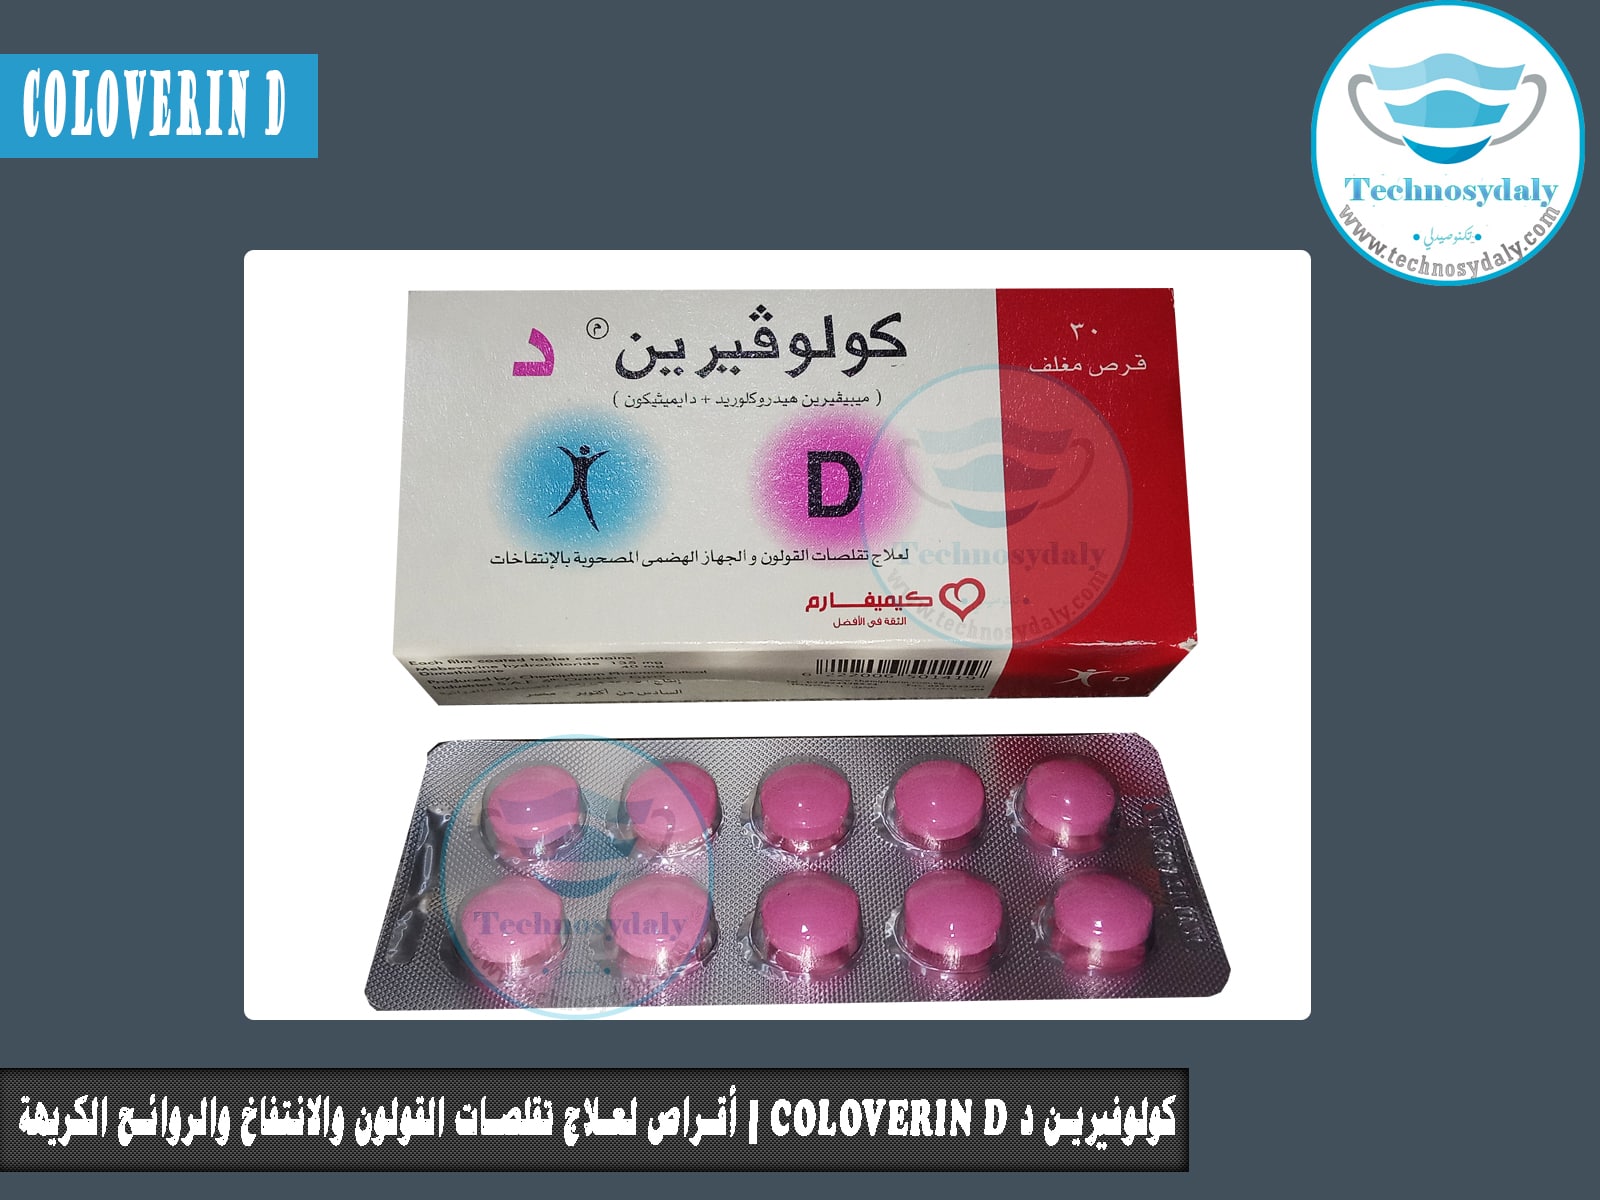 كولوفيرين د coloverin D أقراص لعلاج تقلصات القولون والانتفاخ والروائح الكريهة